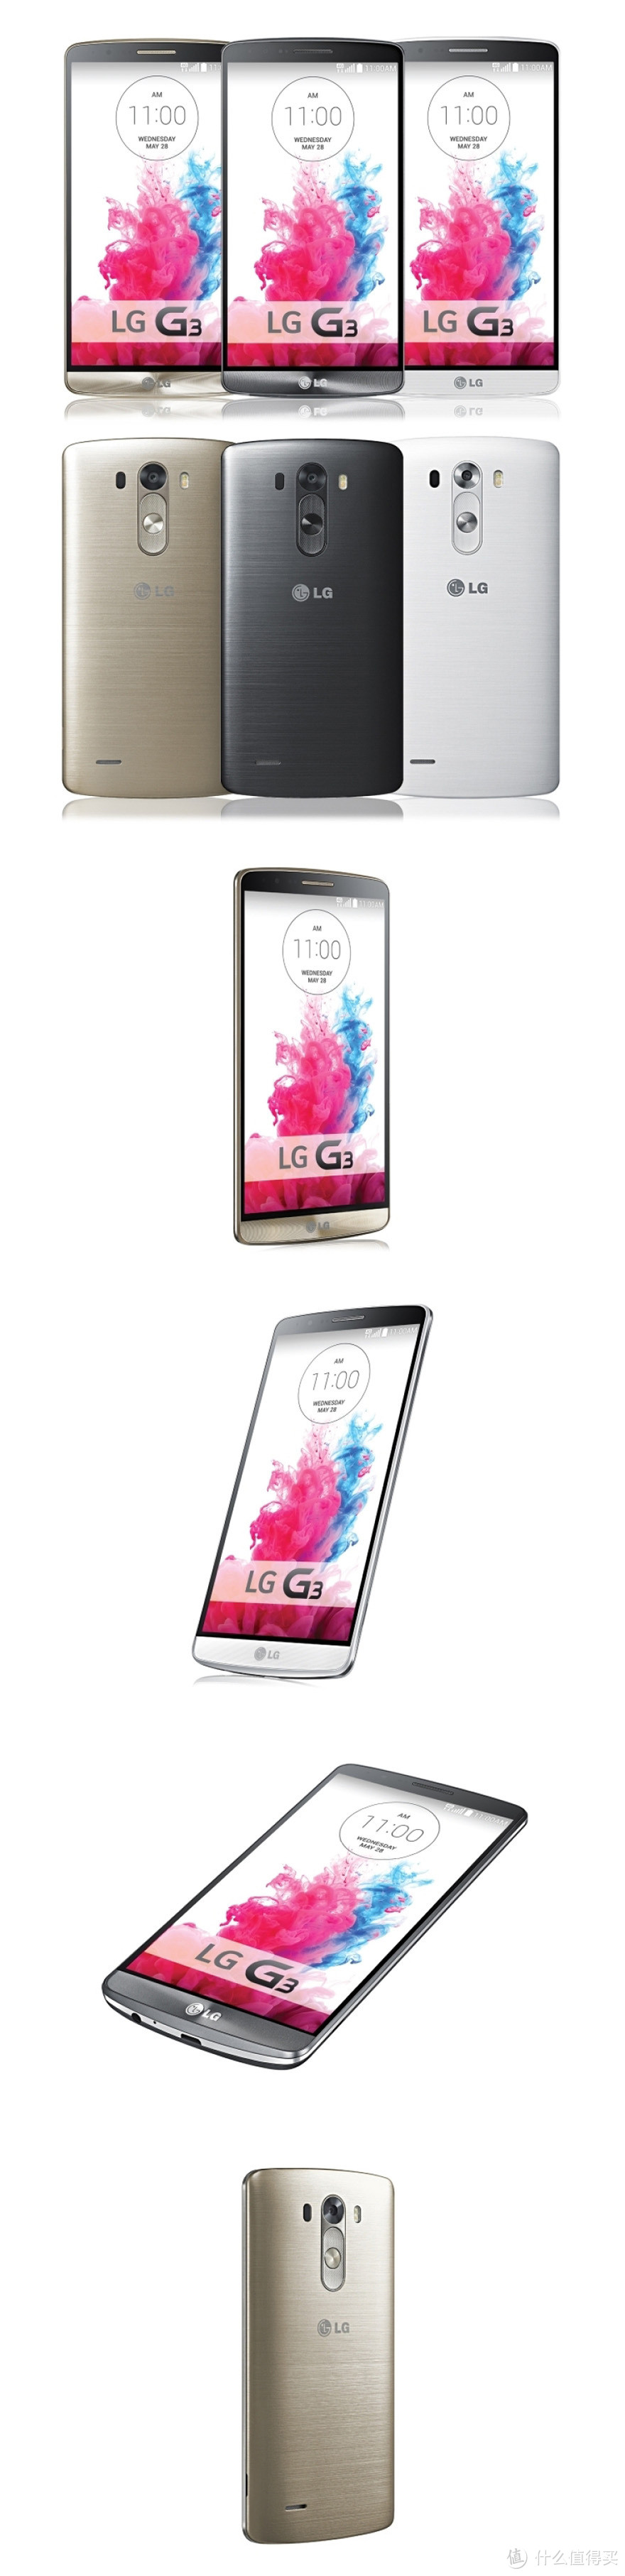 LG发布新旗舰G3智能手机 主打2K屏+激光自动对焦